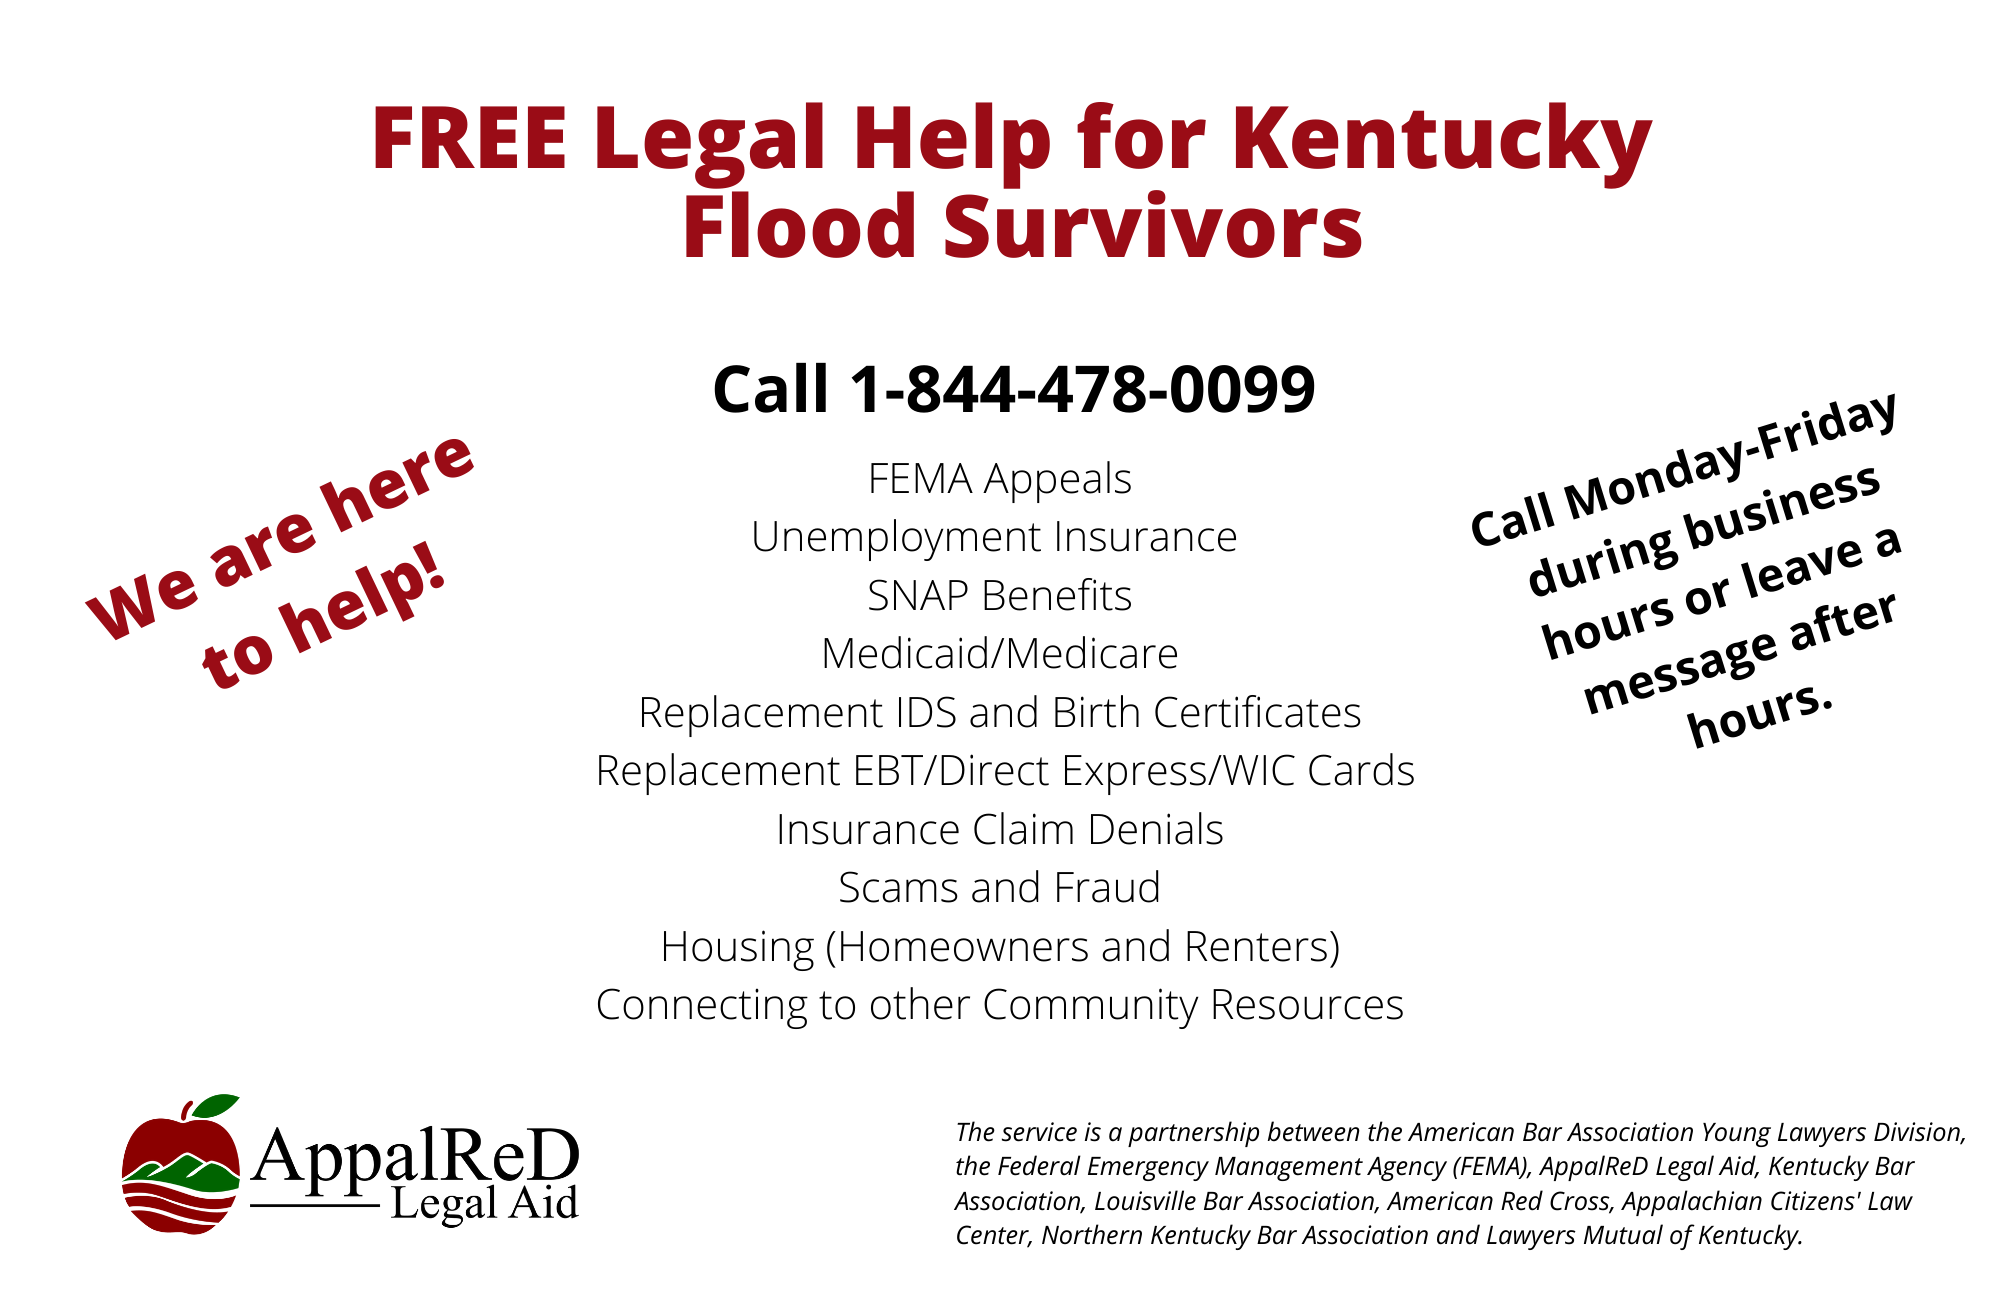 Flood hotline is 1-844-478-0099 